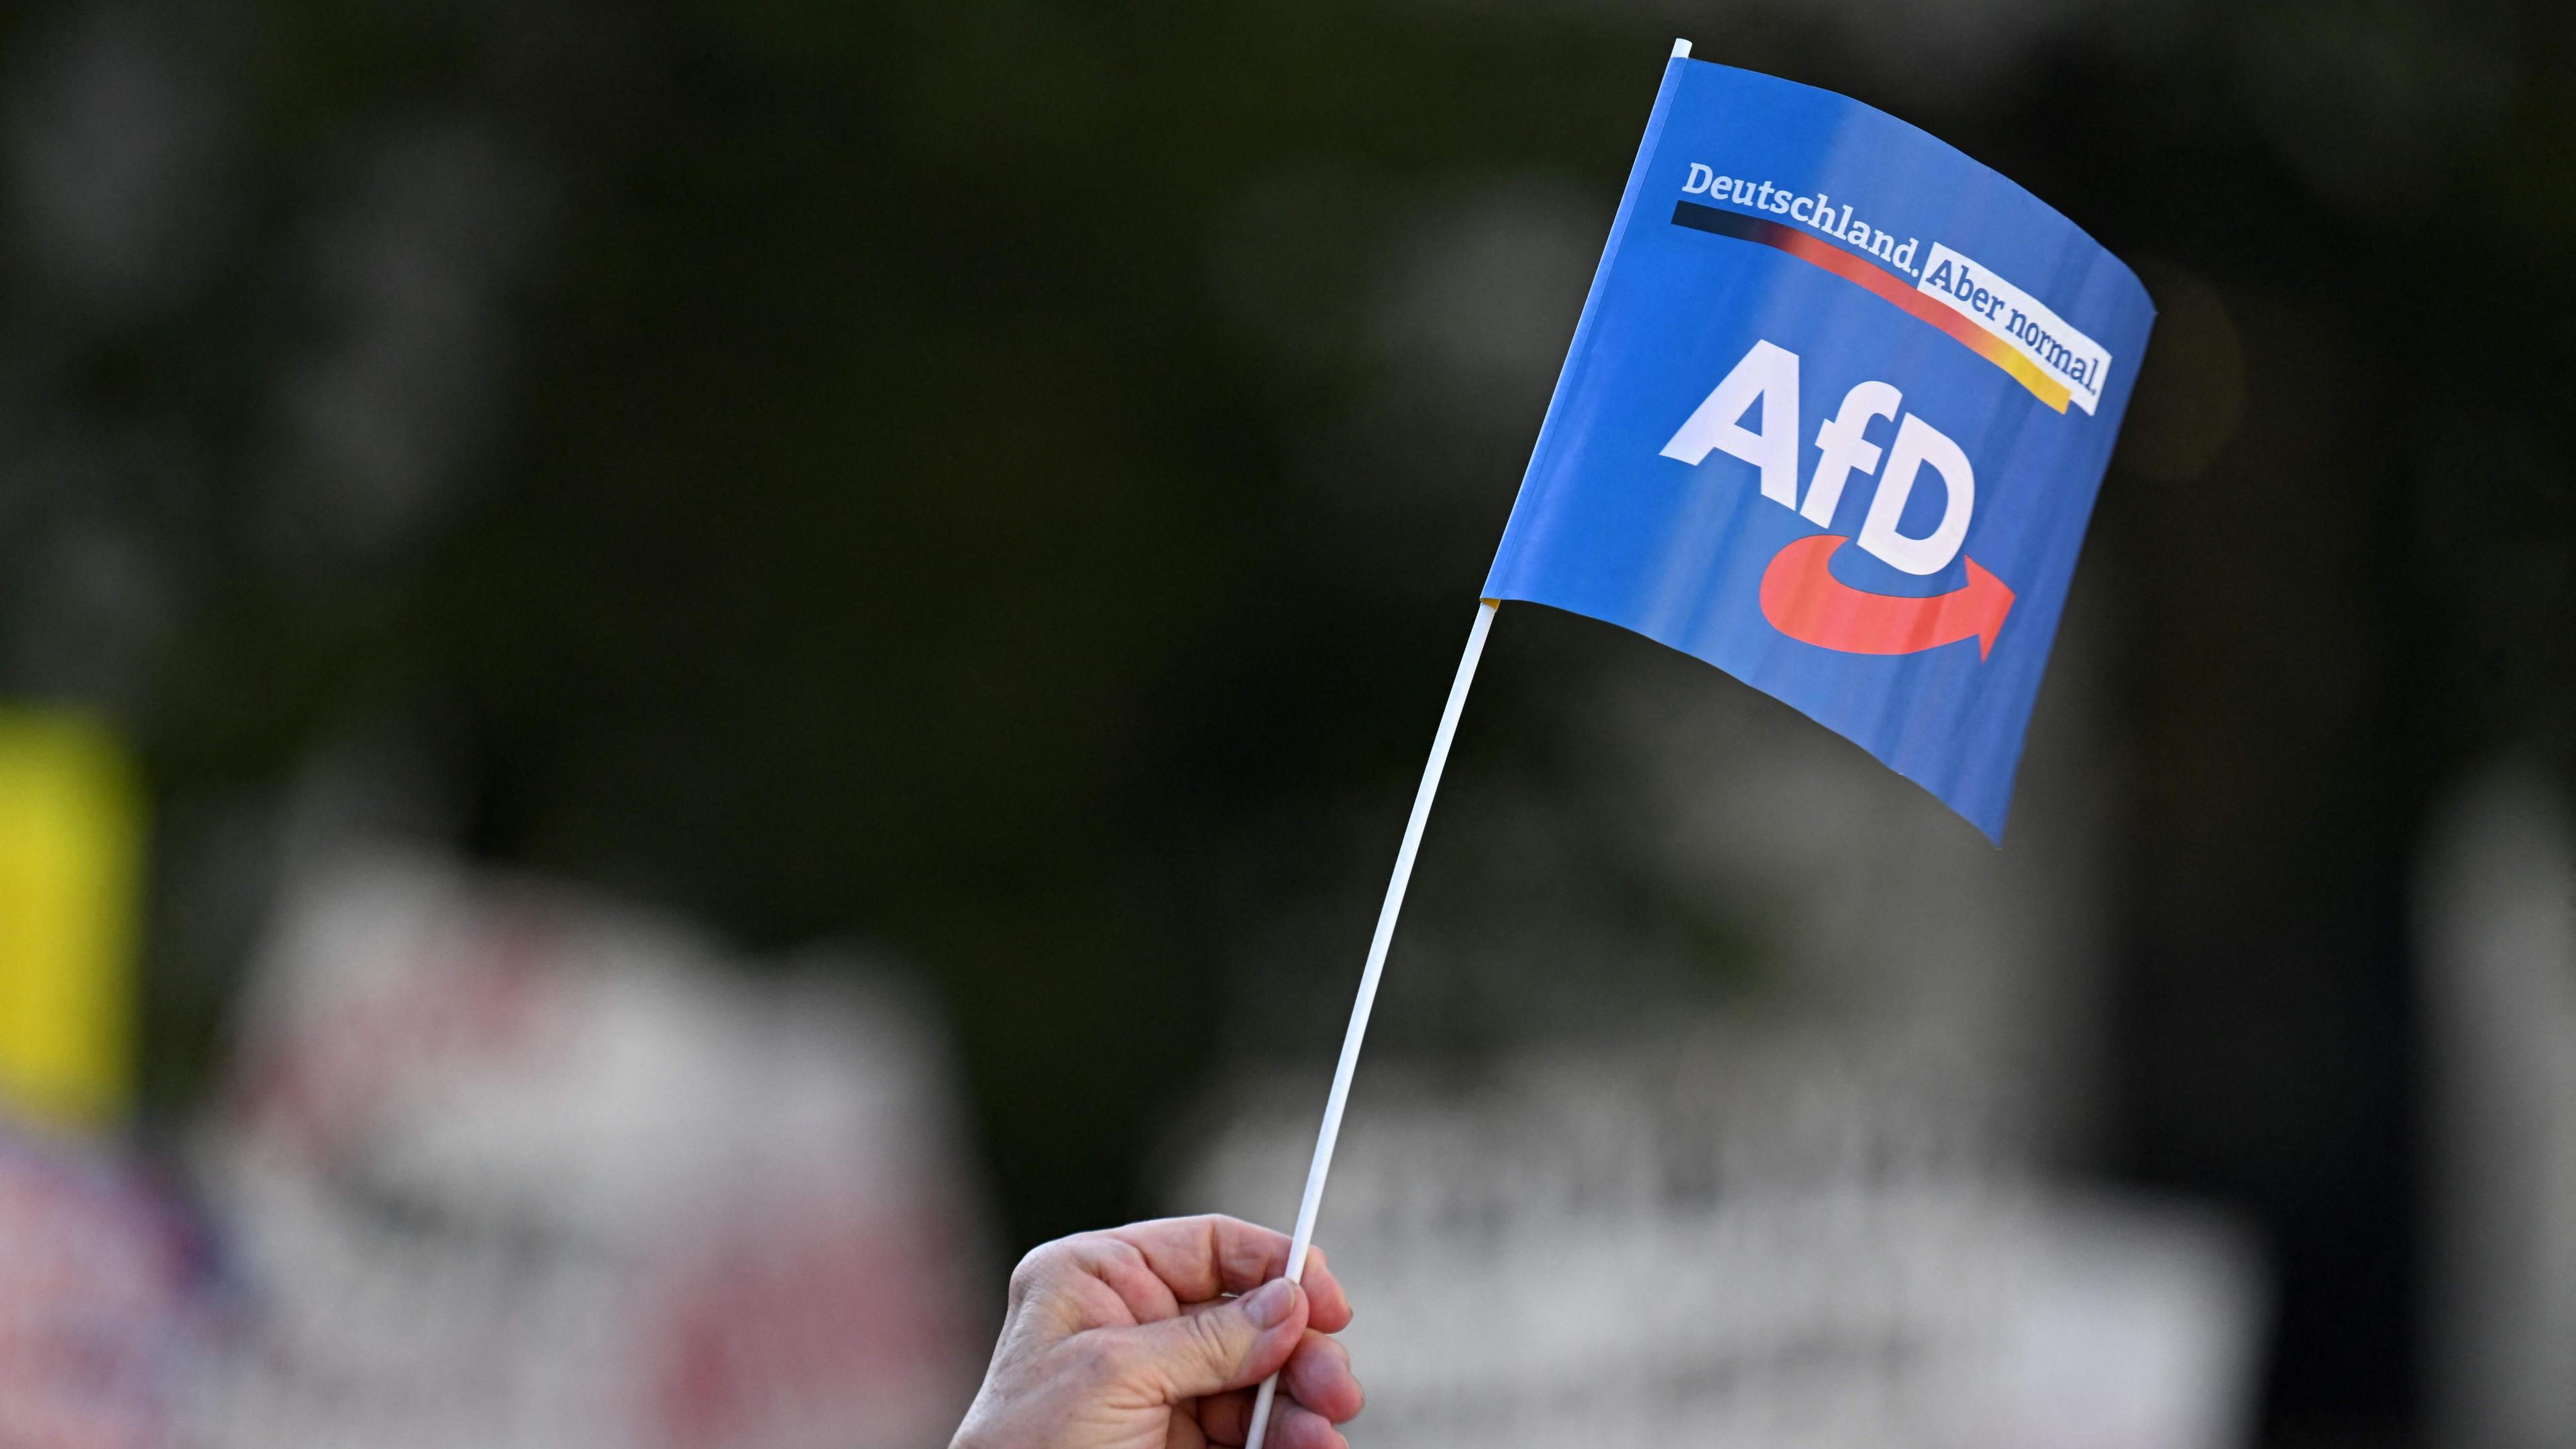 Parteien fordern: Unternehmer sollen sich gegen AfD stellen - ZDFheute